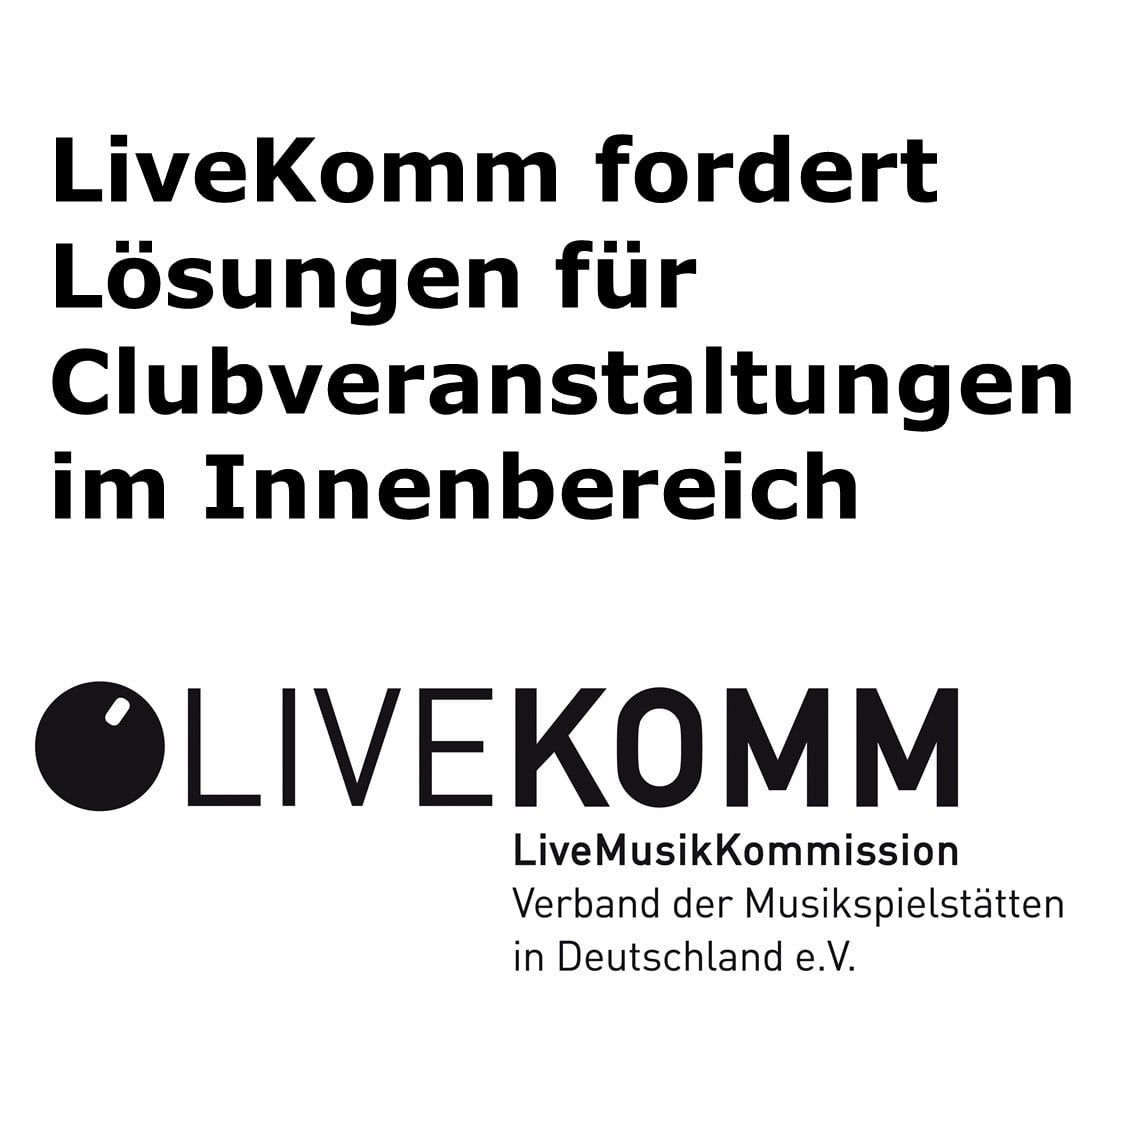 Bild zu LiveKomm fordert Lösungen für Clubveranstaltungen im Innenbereich